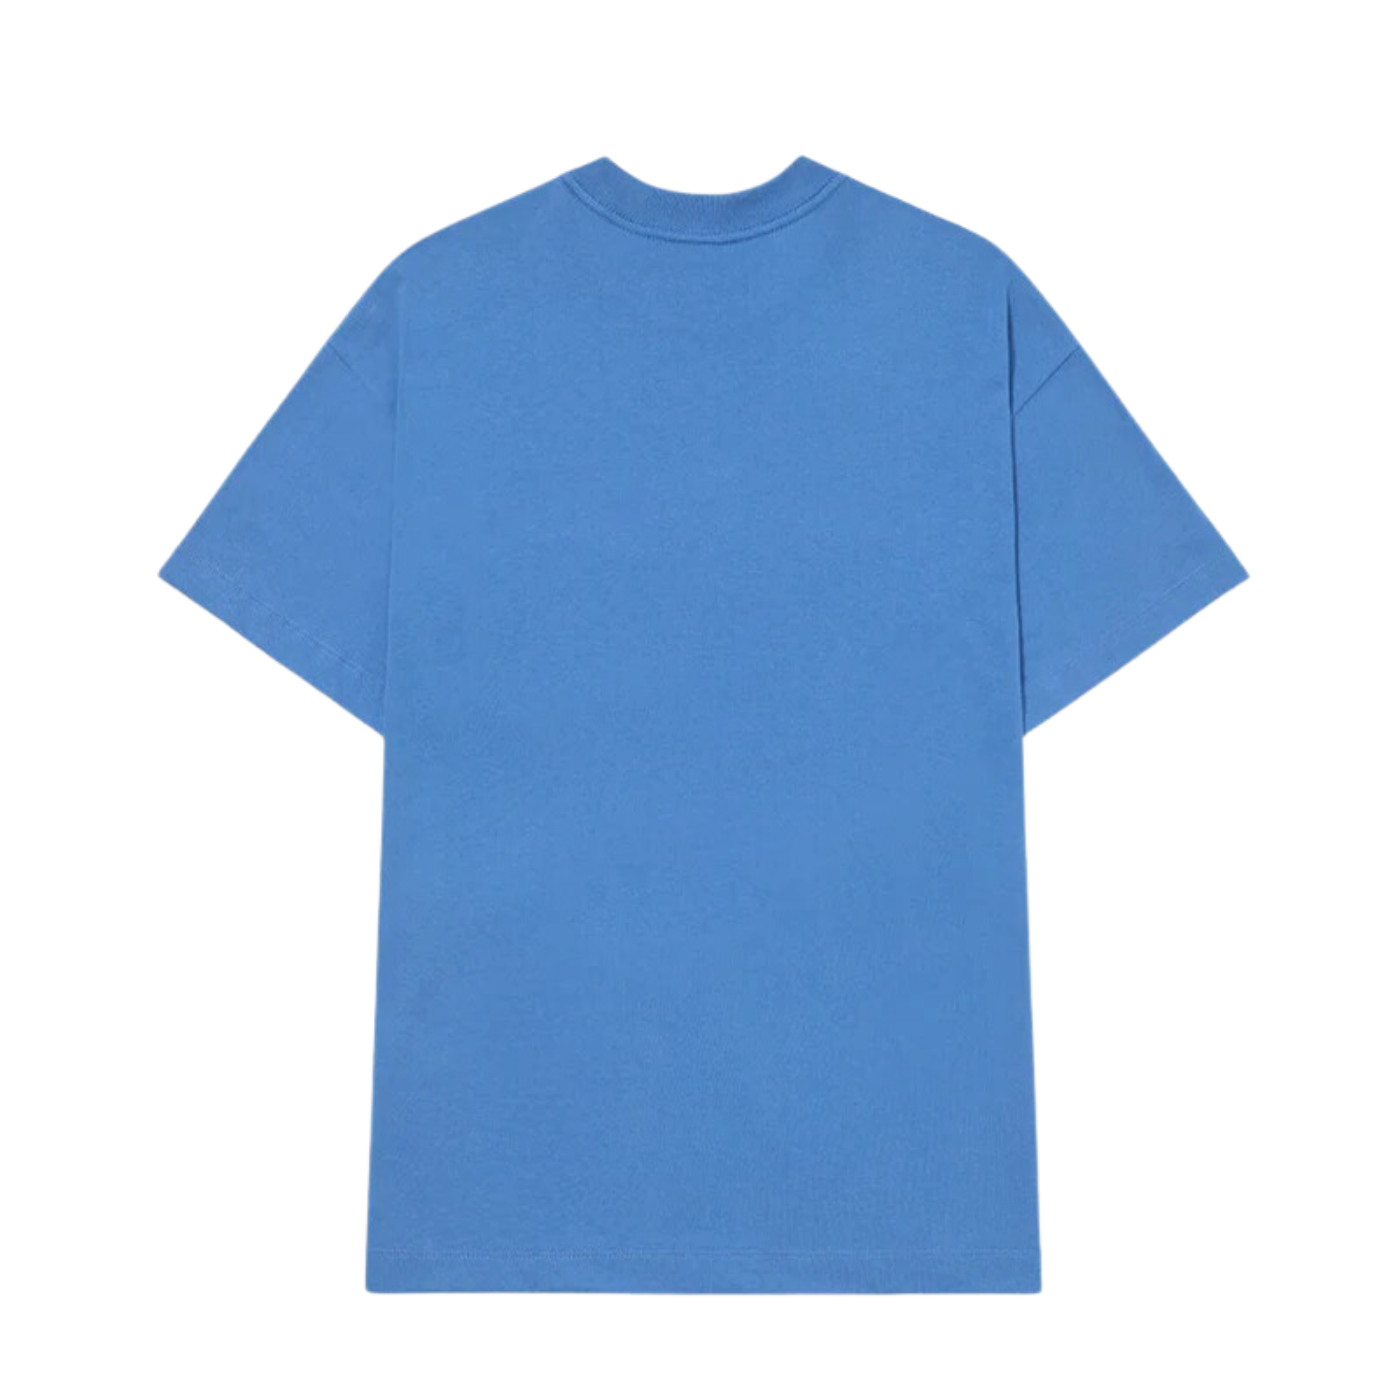 Camiseta Piet Pocket Lake Blue